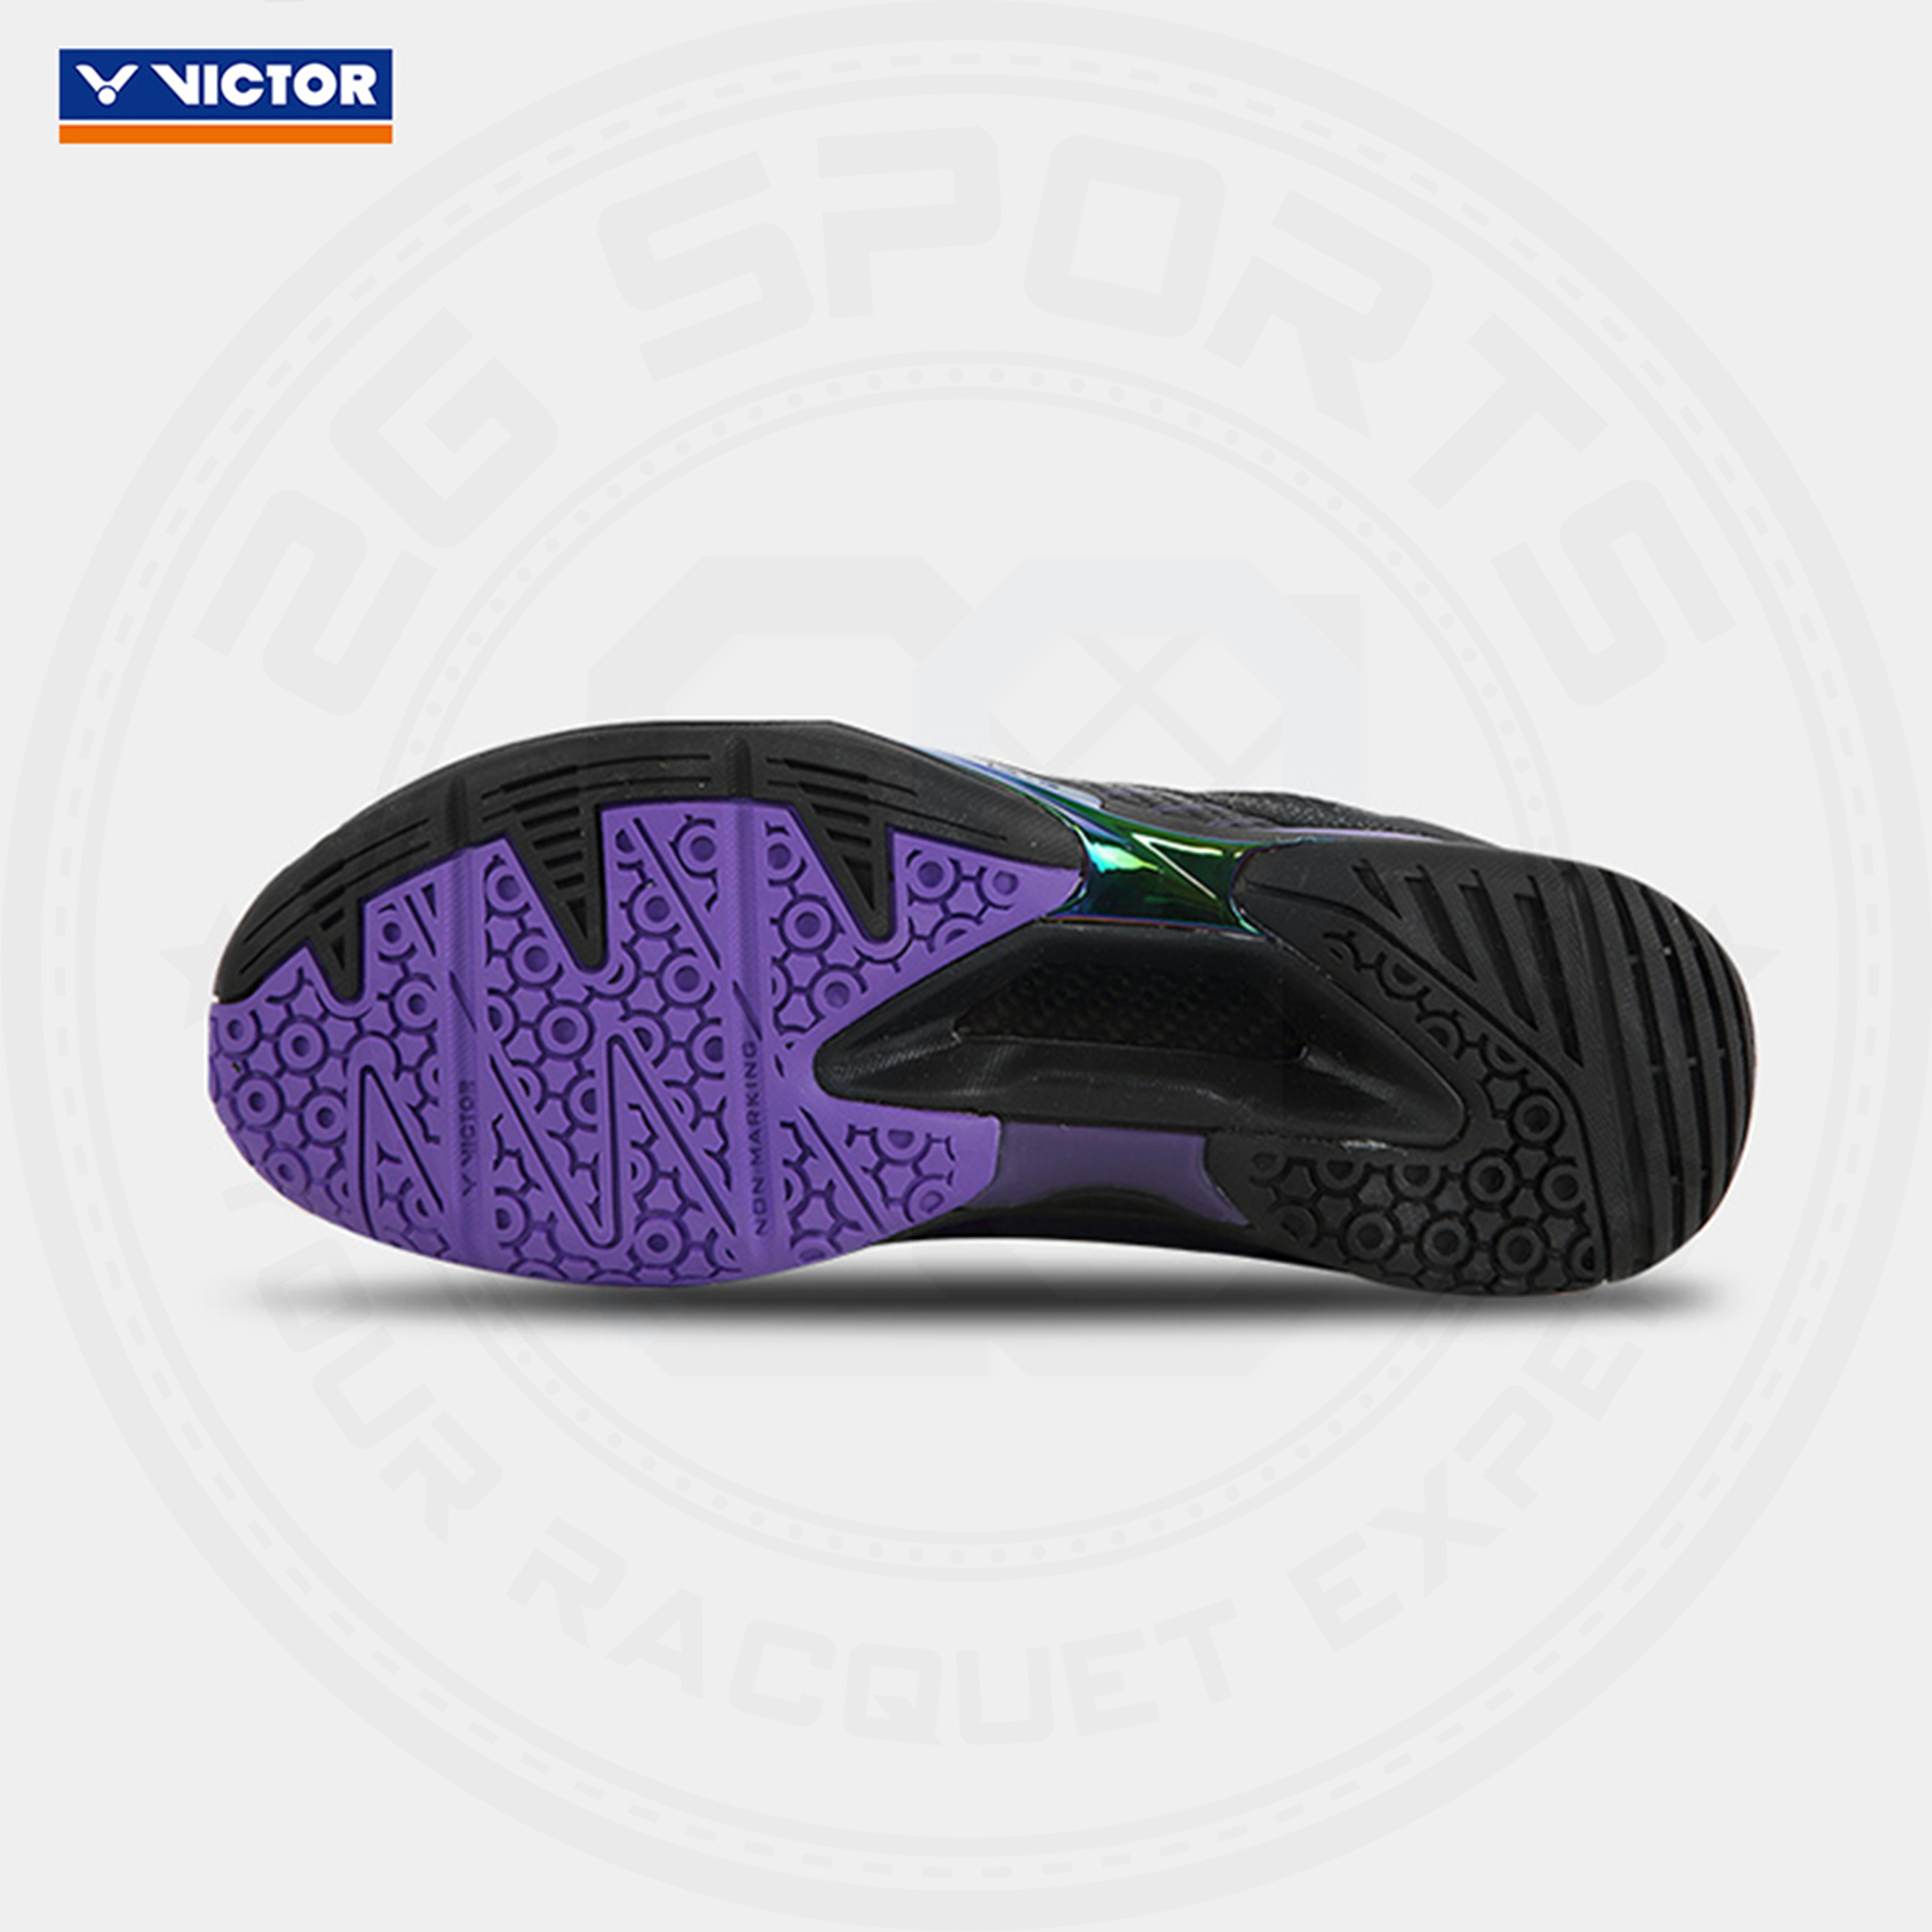 Victor X LZJ A970ACE Badminton Shoes Black/ Purple MEN'S